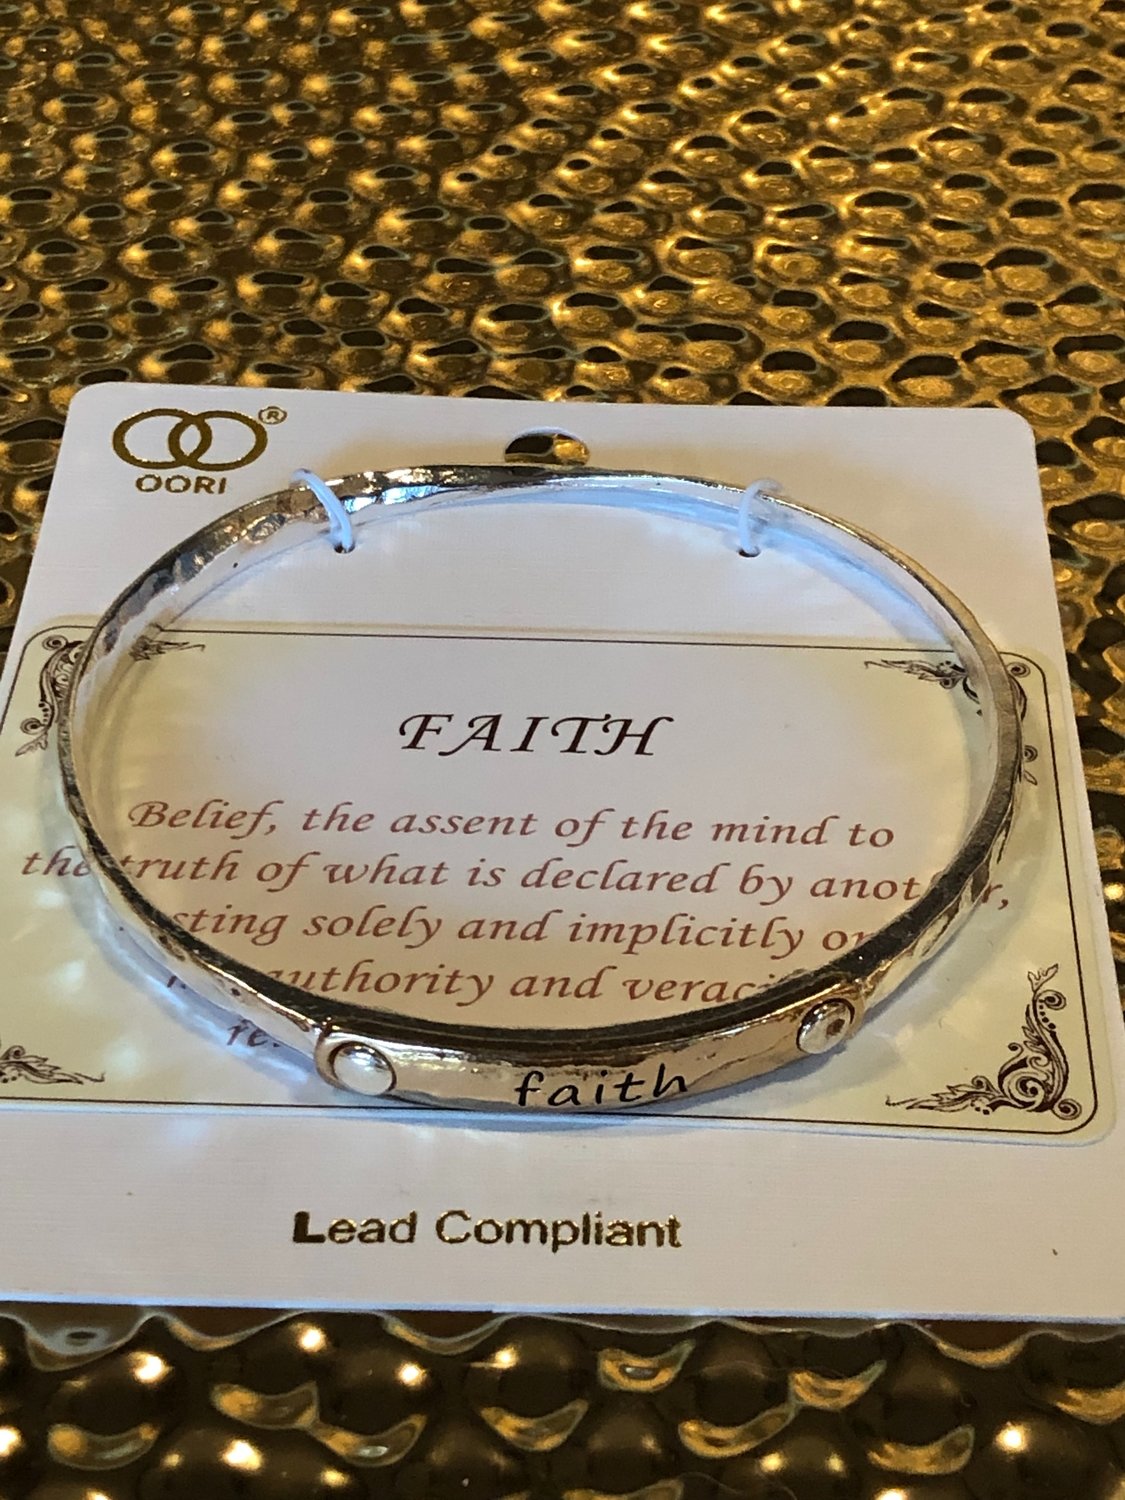 "FAITH" mantra bracelet